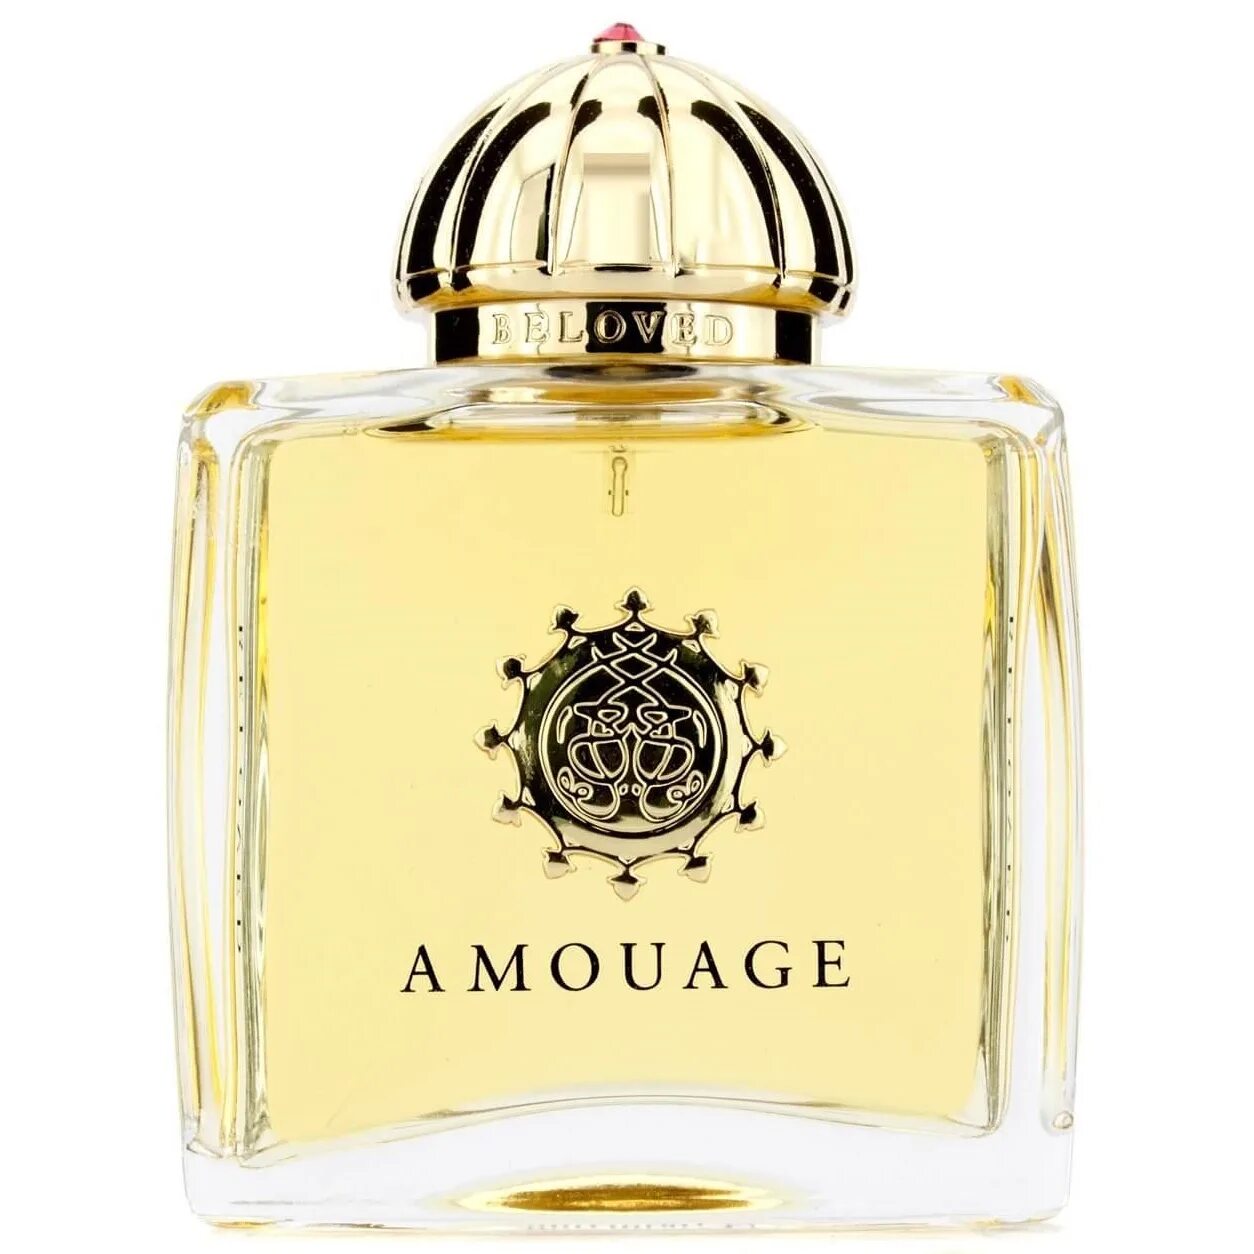 Amouage 50 ml. Amouage Perfume. Beloved Парфюм Амуаж. Amouage 50 мл.